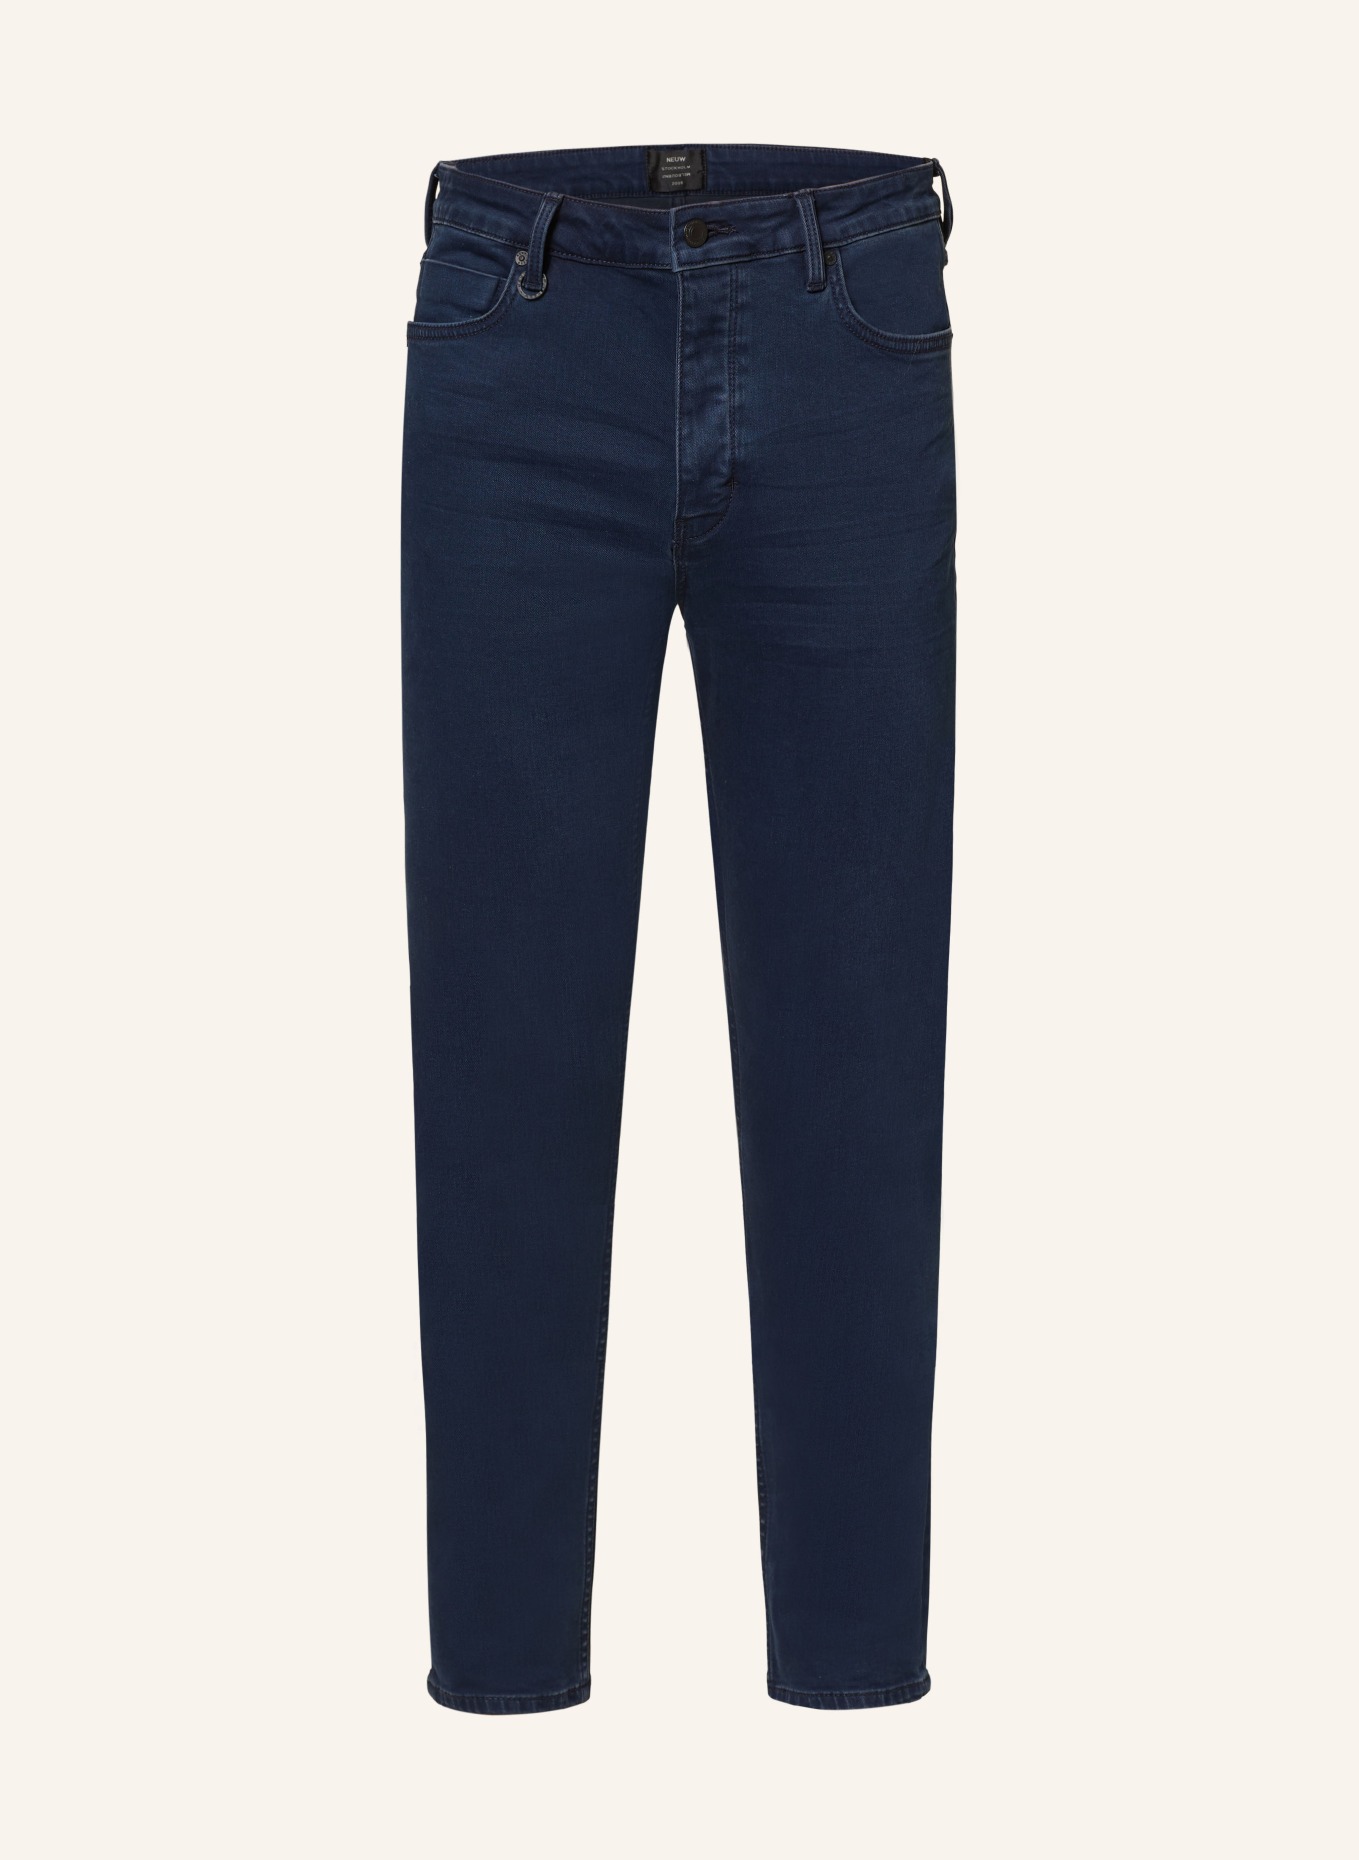 NEUW Jeans RAY Slim Tapered Fit, Farbe: 1802 BLUE (Bild 1)